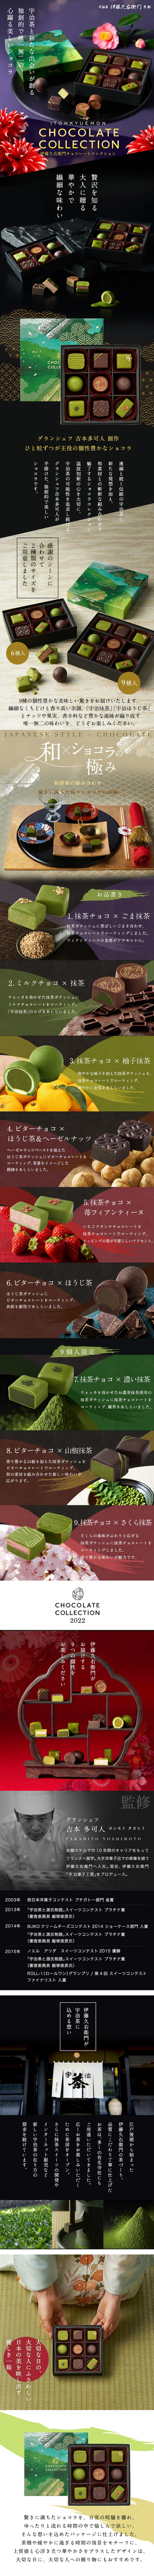 チョコレートコレクション_pc_1